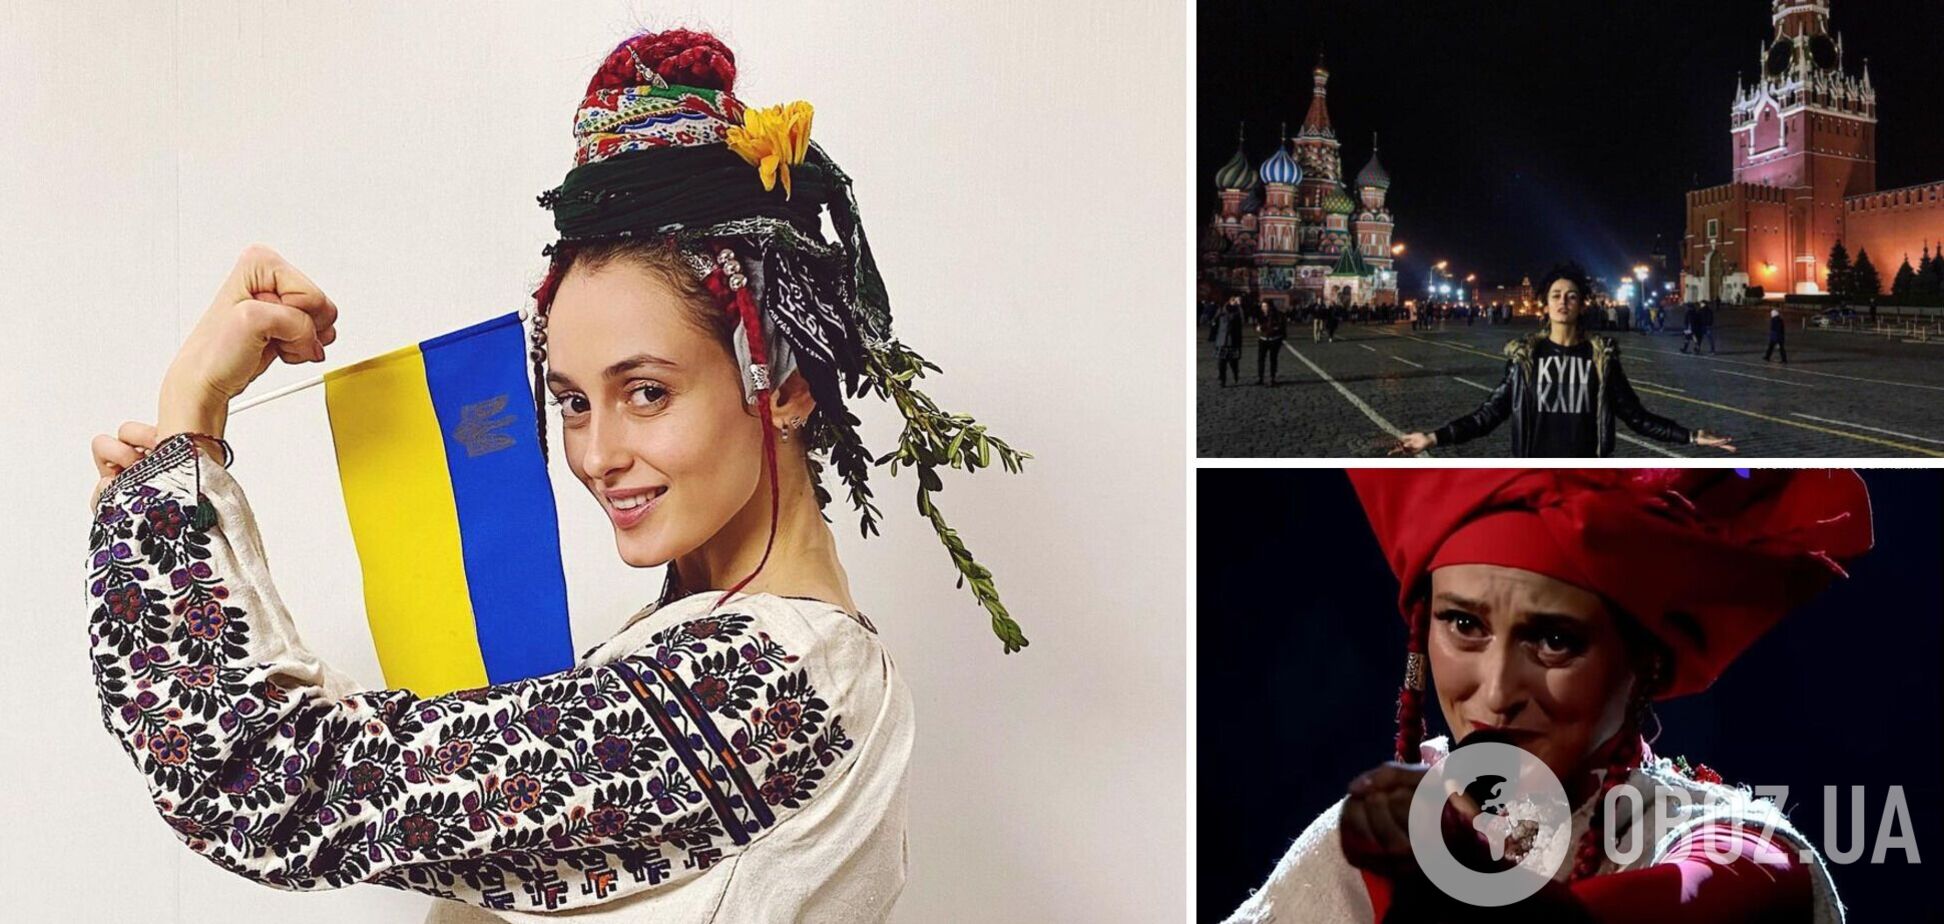 Аліна Паш, яка виступала в Криму та їздила до Москви, зізналася, що шкодує про колаборацію з росіянами